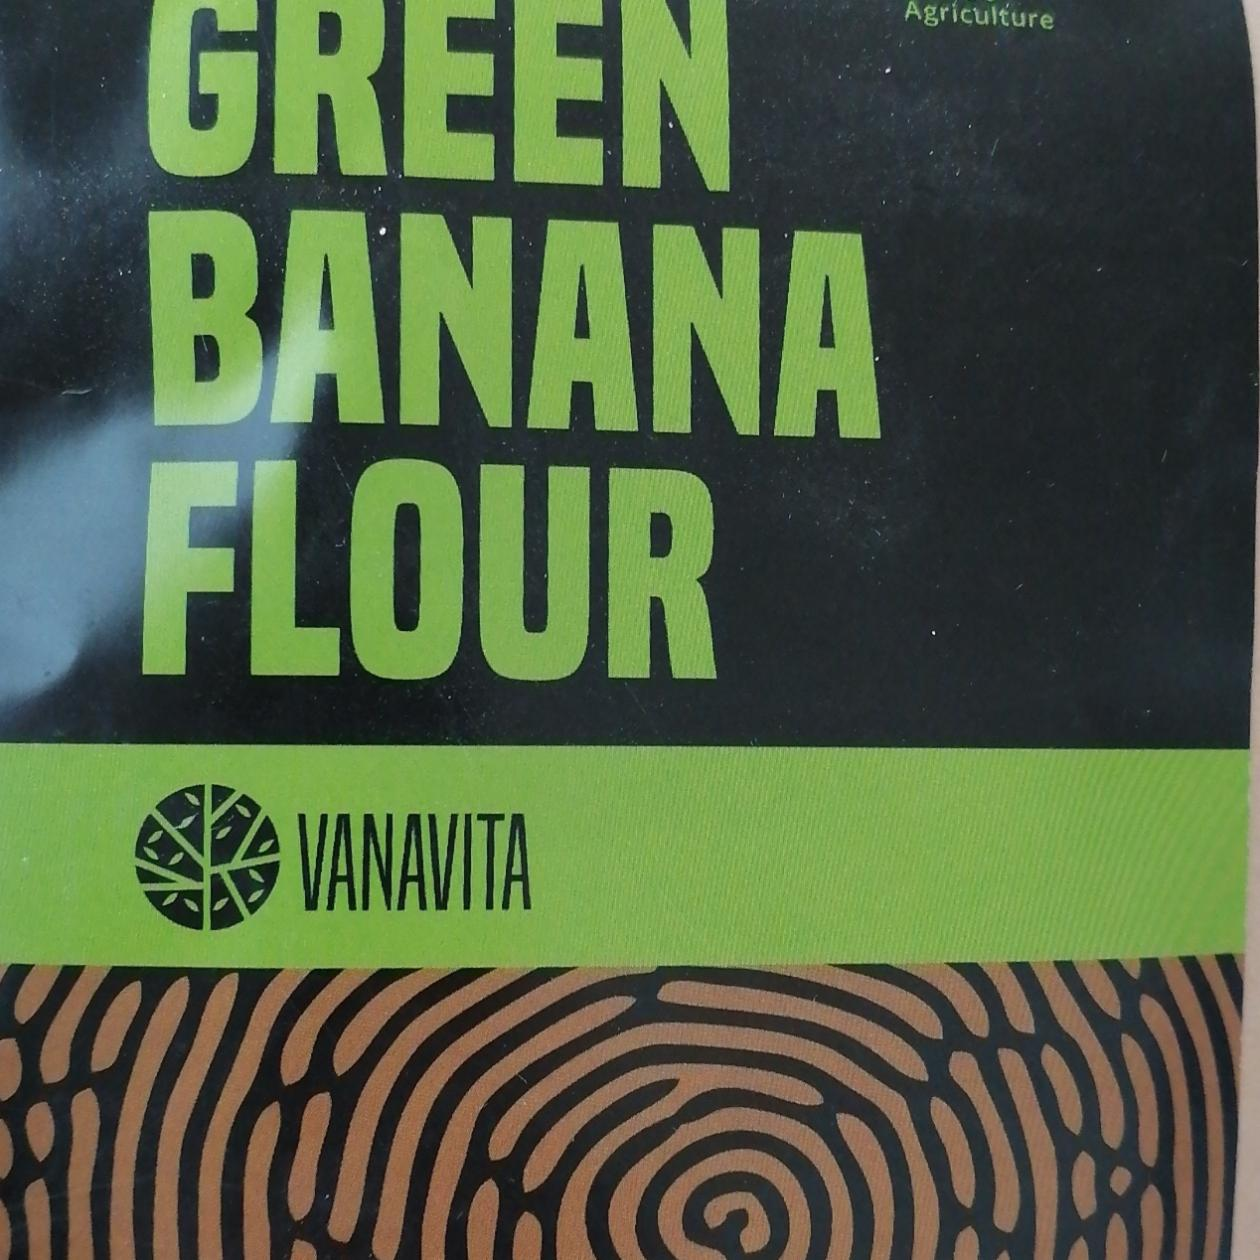 Fotografie - Green banana flour Vanavita